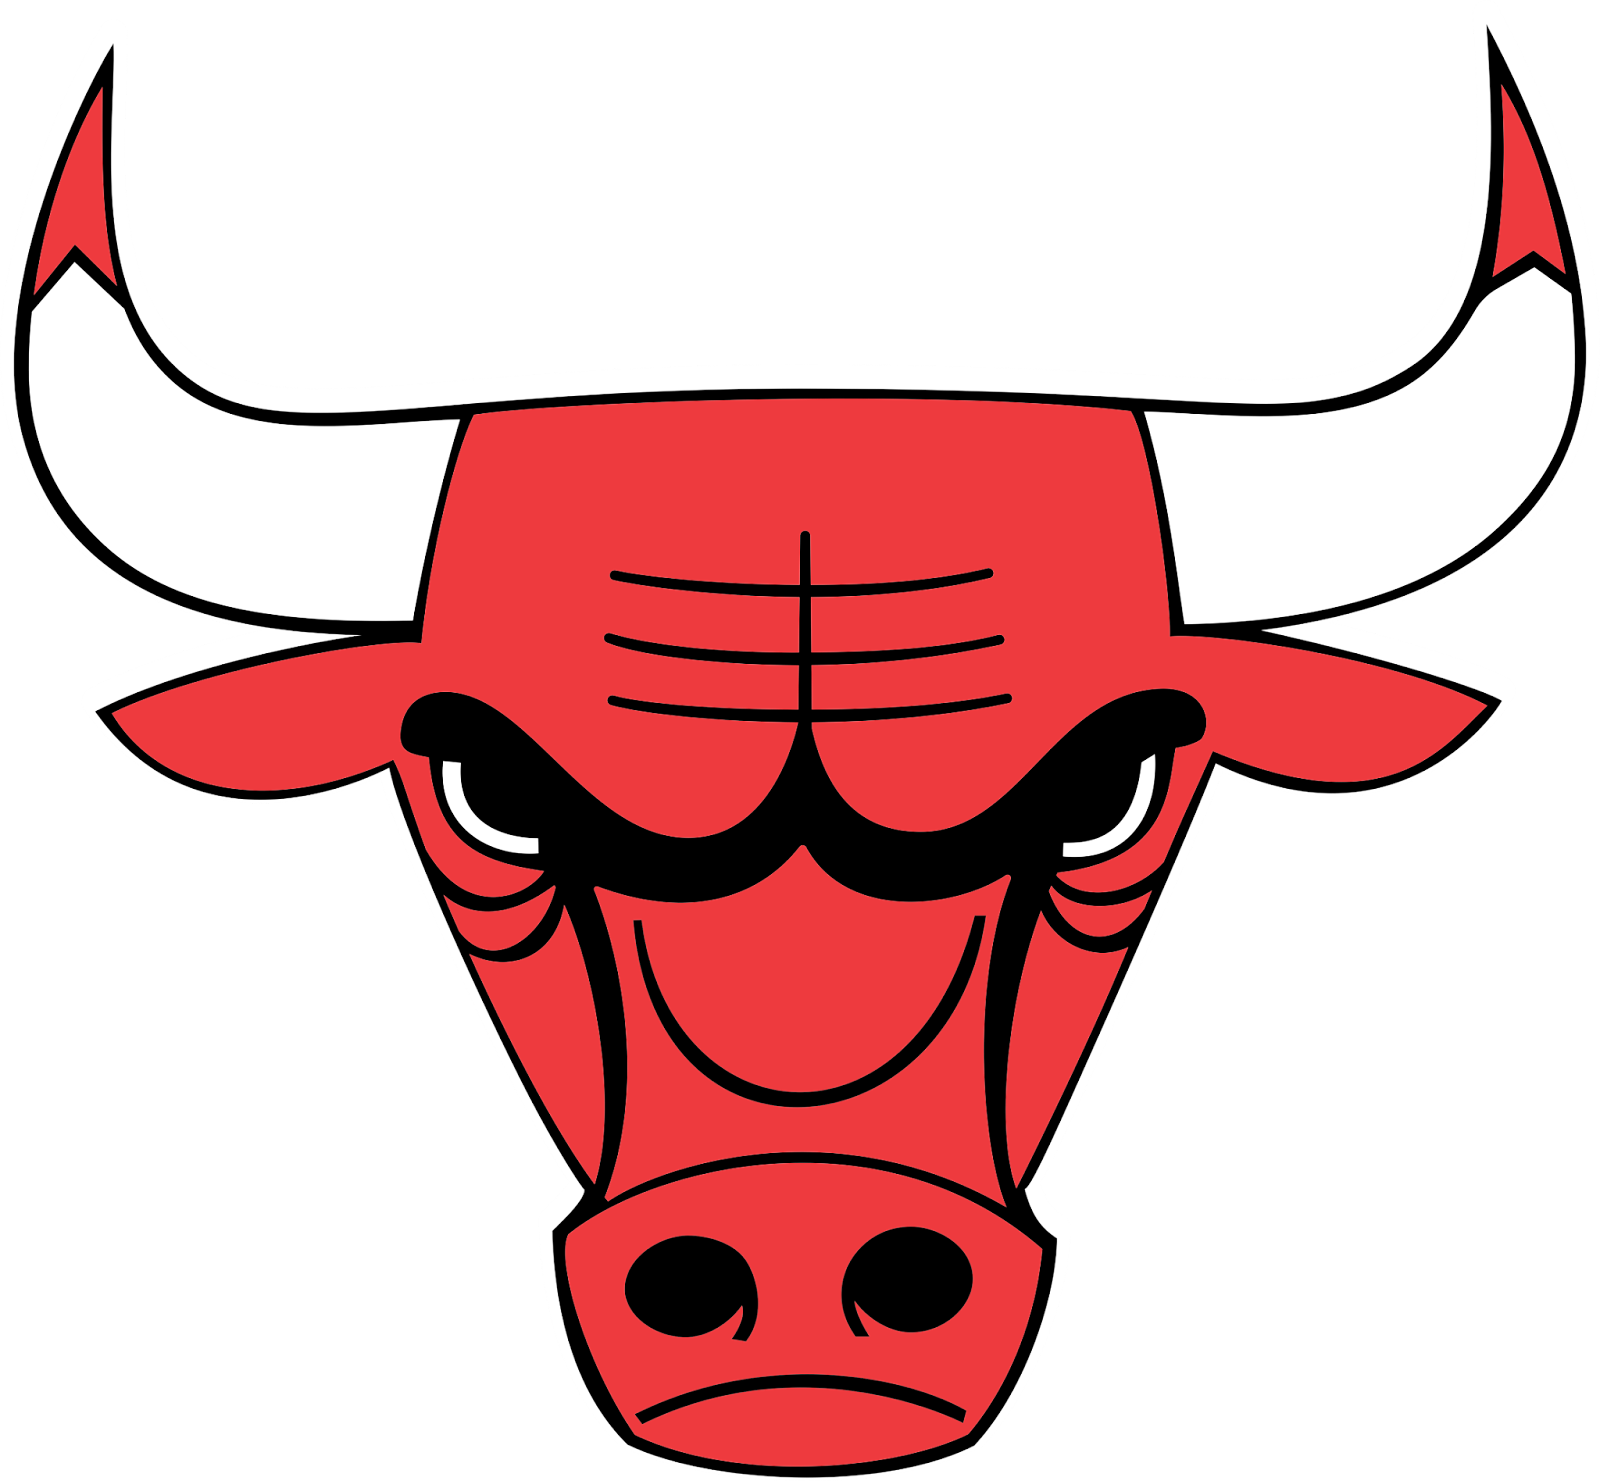 0 Result Images of Chicago Bulls Logo Transparent Background - PNG ...